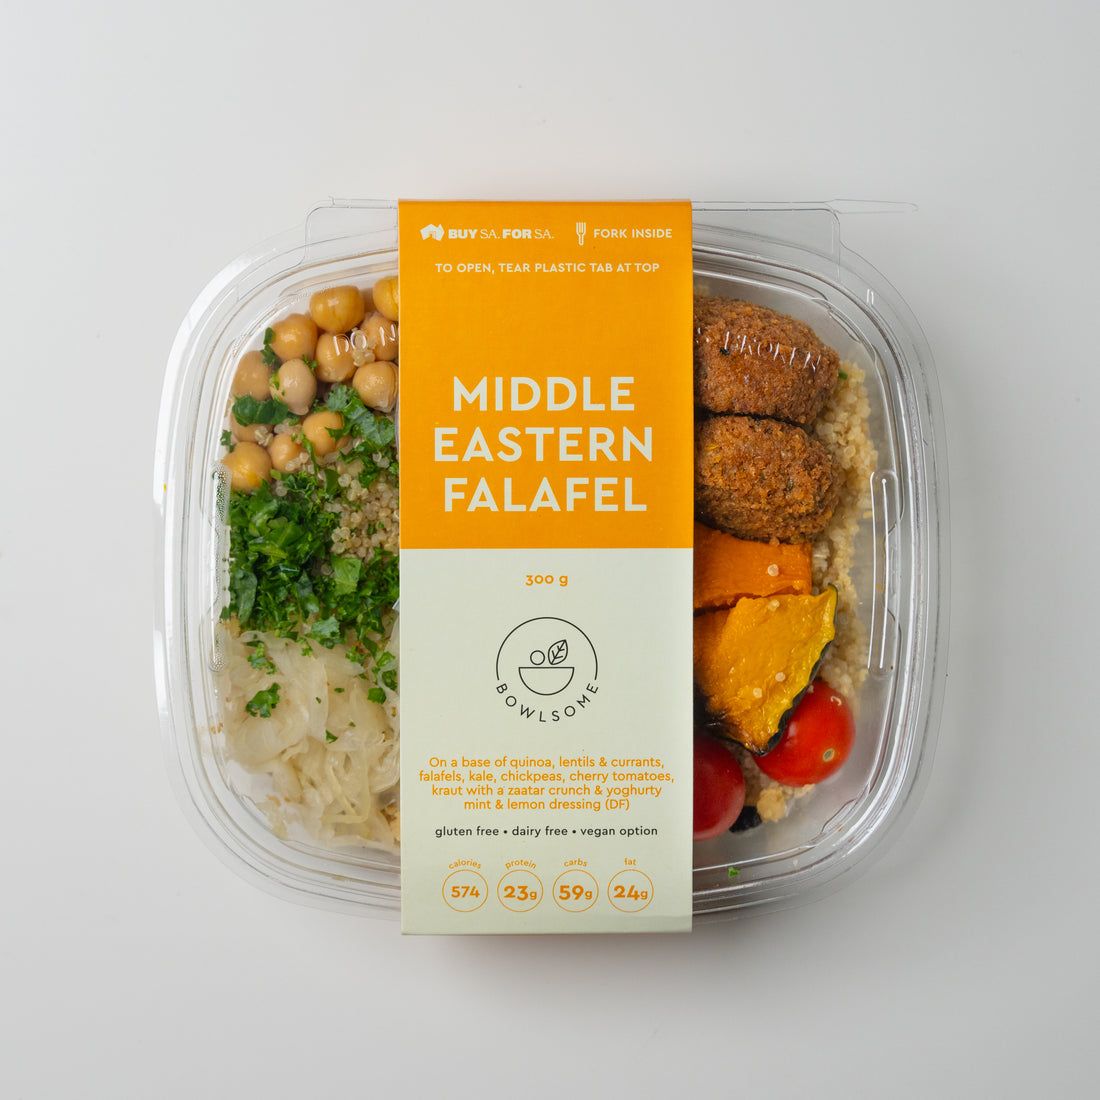 NEW - Middle Eastern Falafel